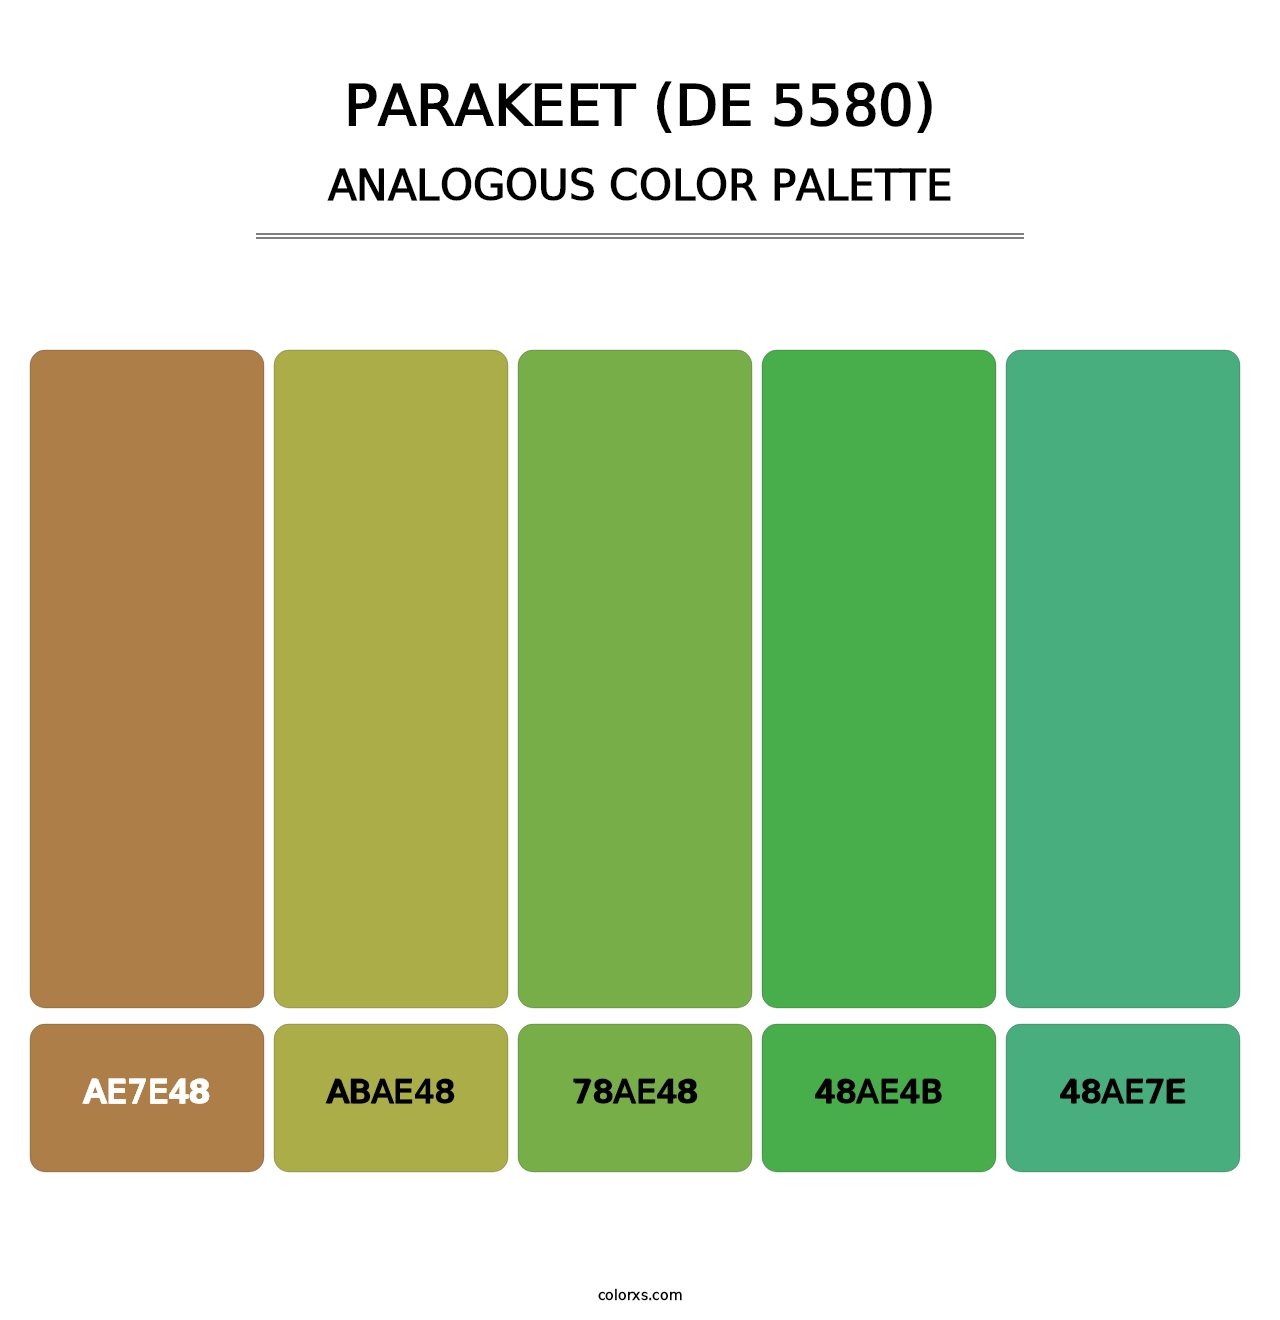 Parakeet (DE 5580) - Analogous Color Palette